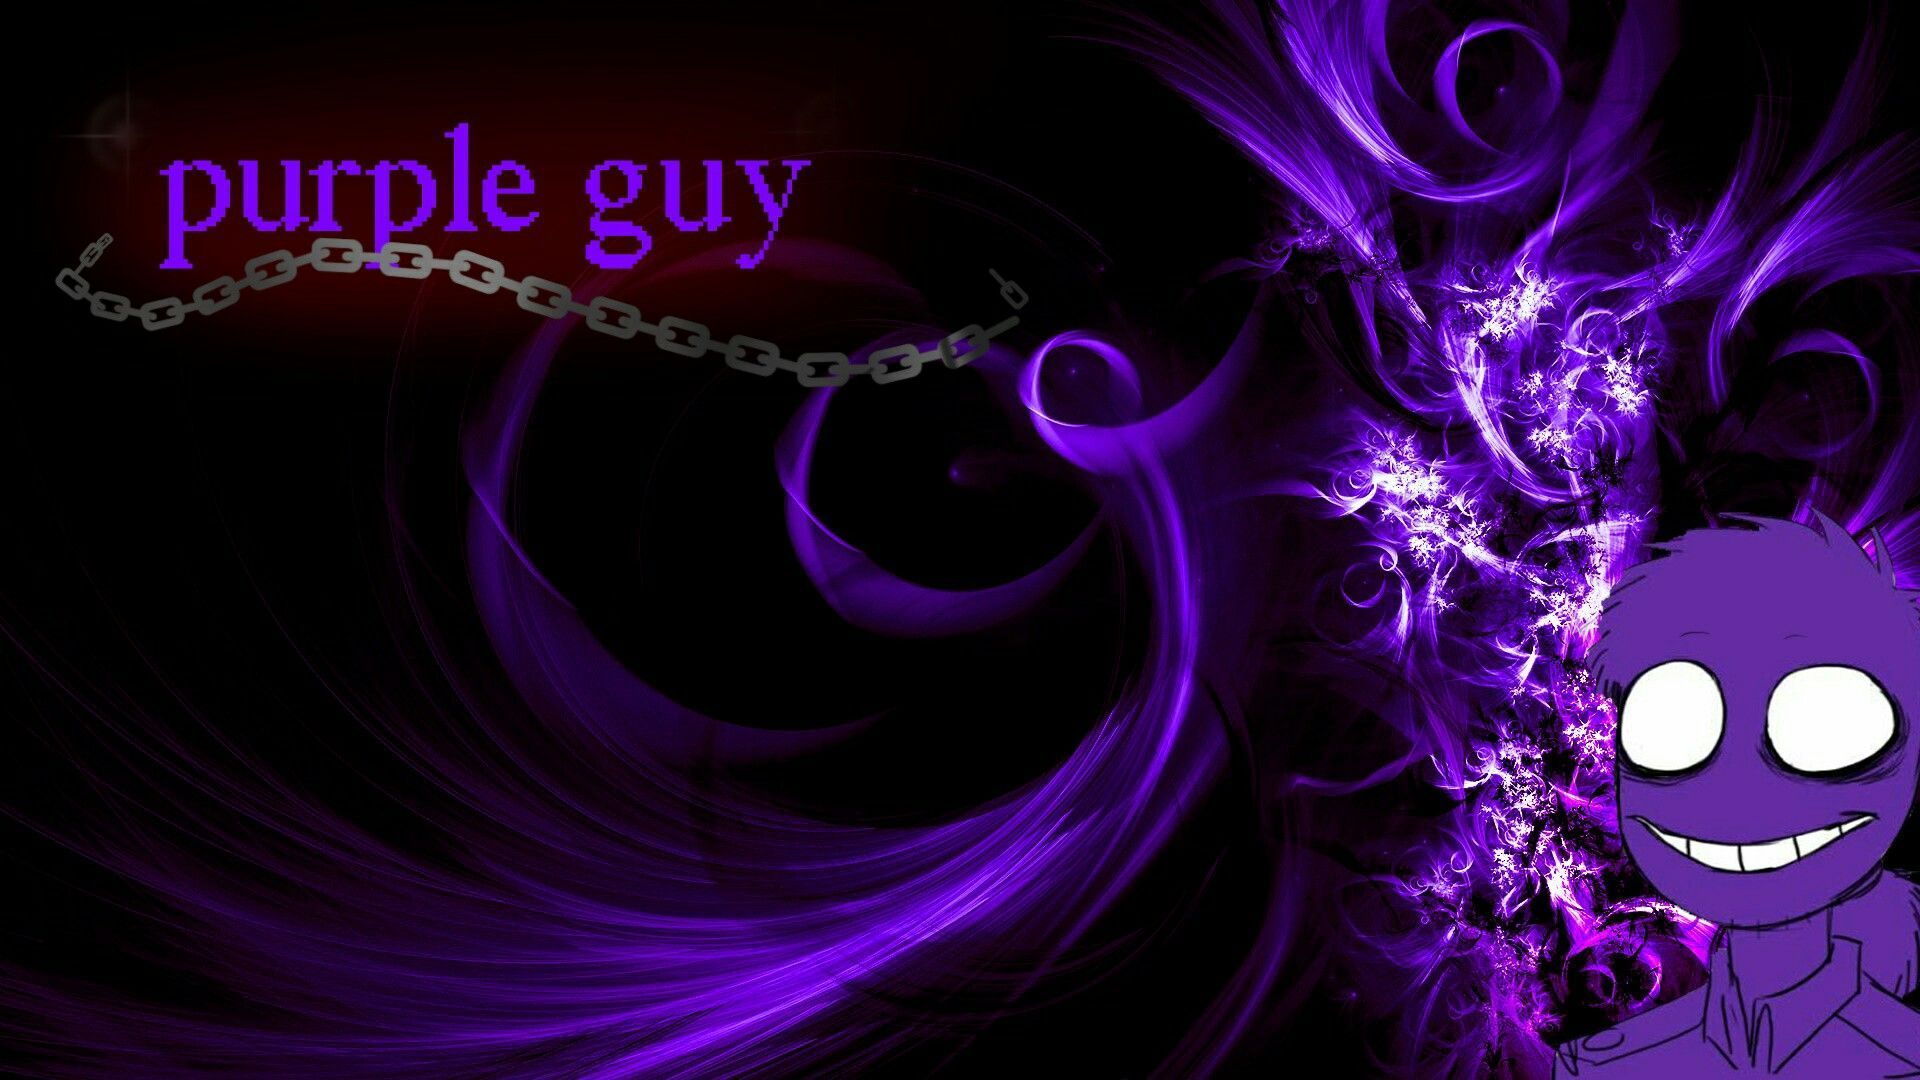 Purple Guy The True Profile  Joke Battles Wikia  Fandom